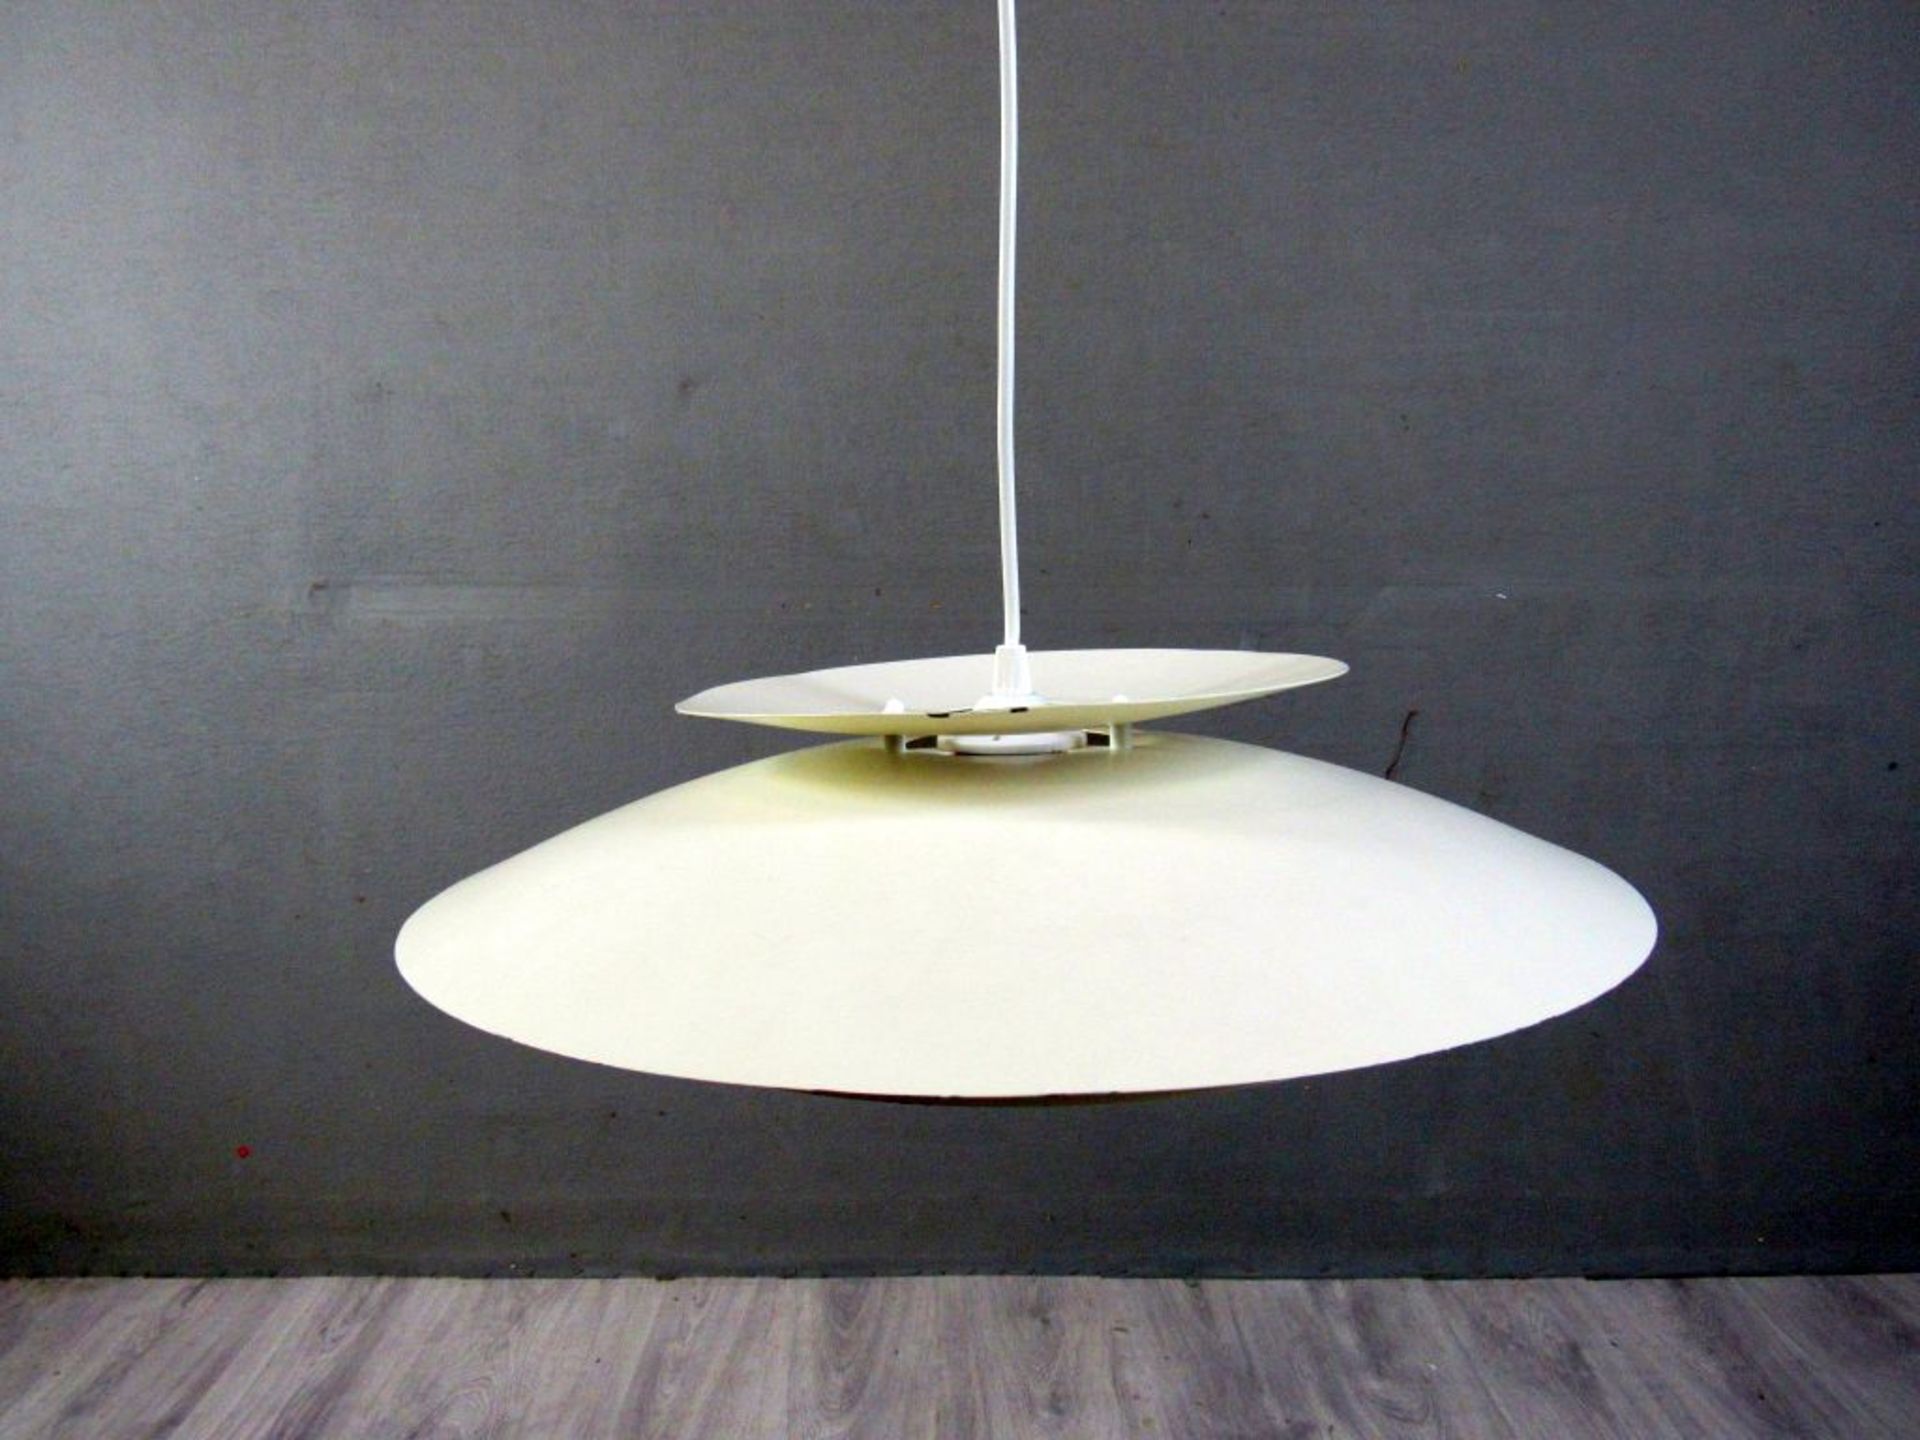 Danish Design 70er Jahre Deckenlampe - Image 2 of 6